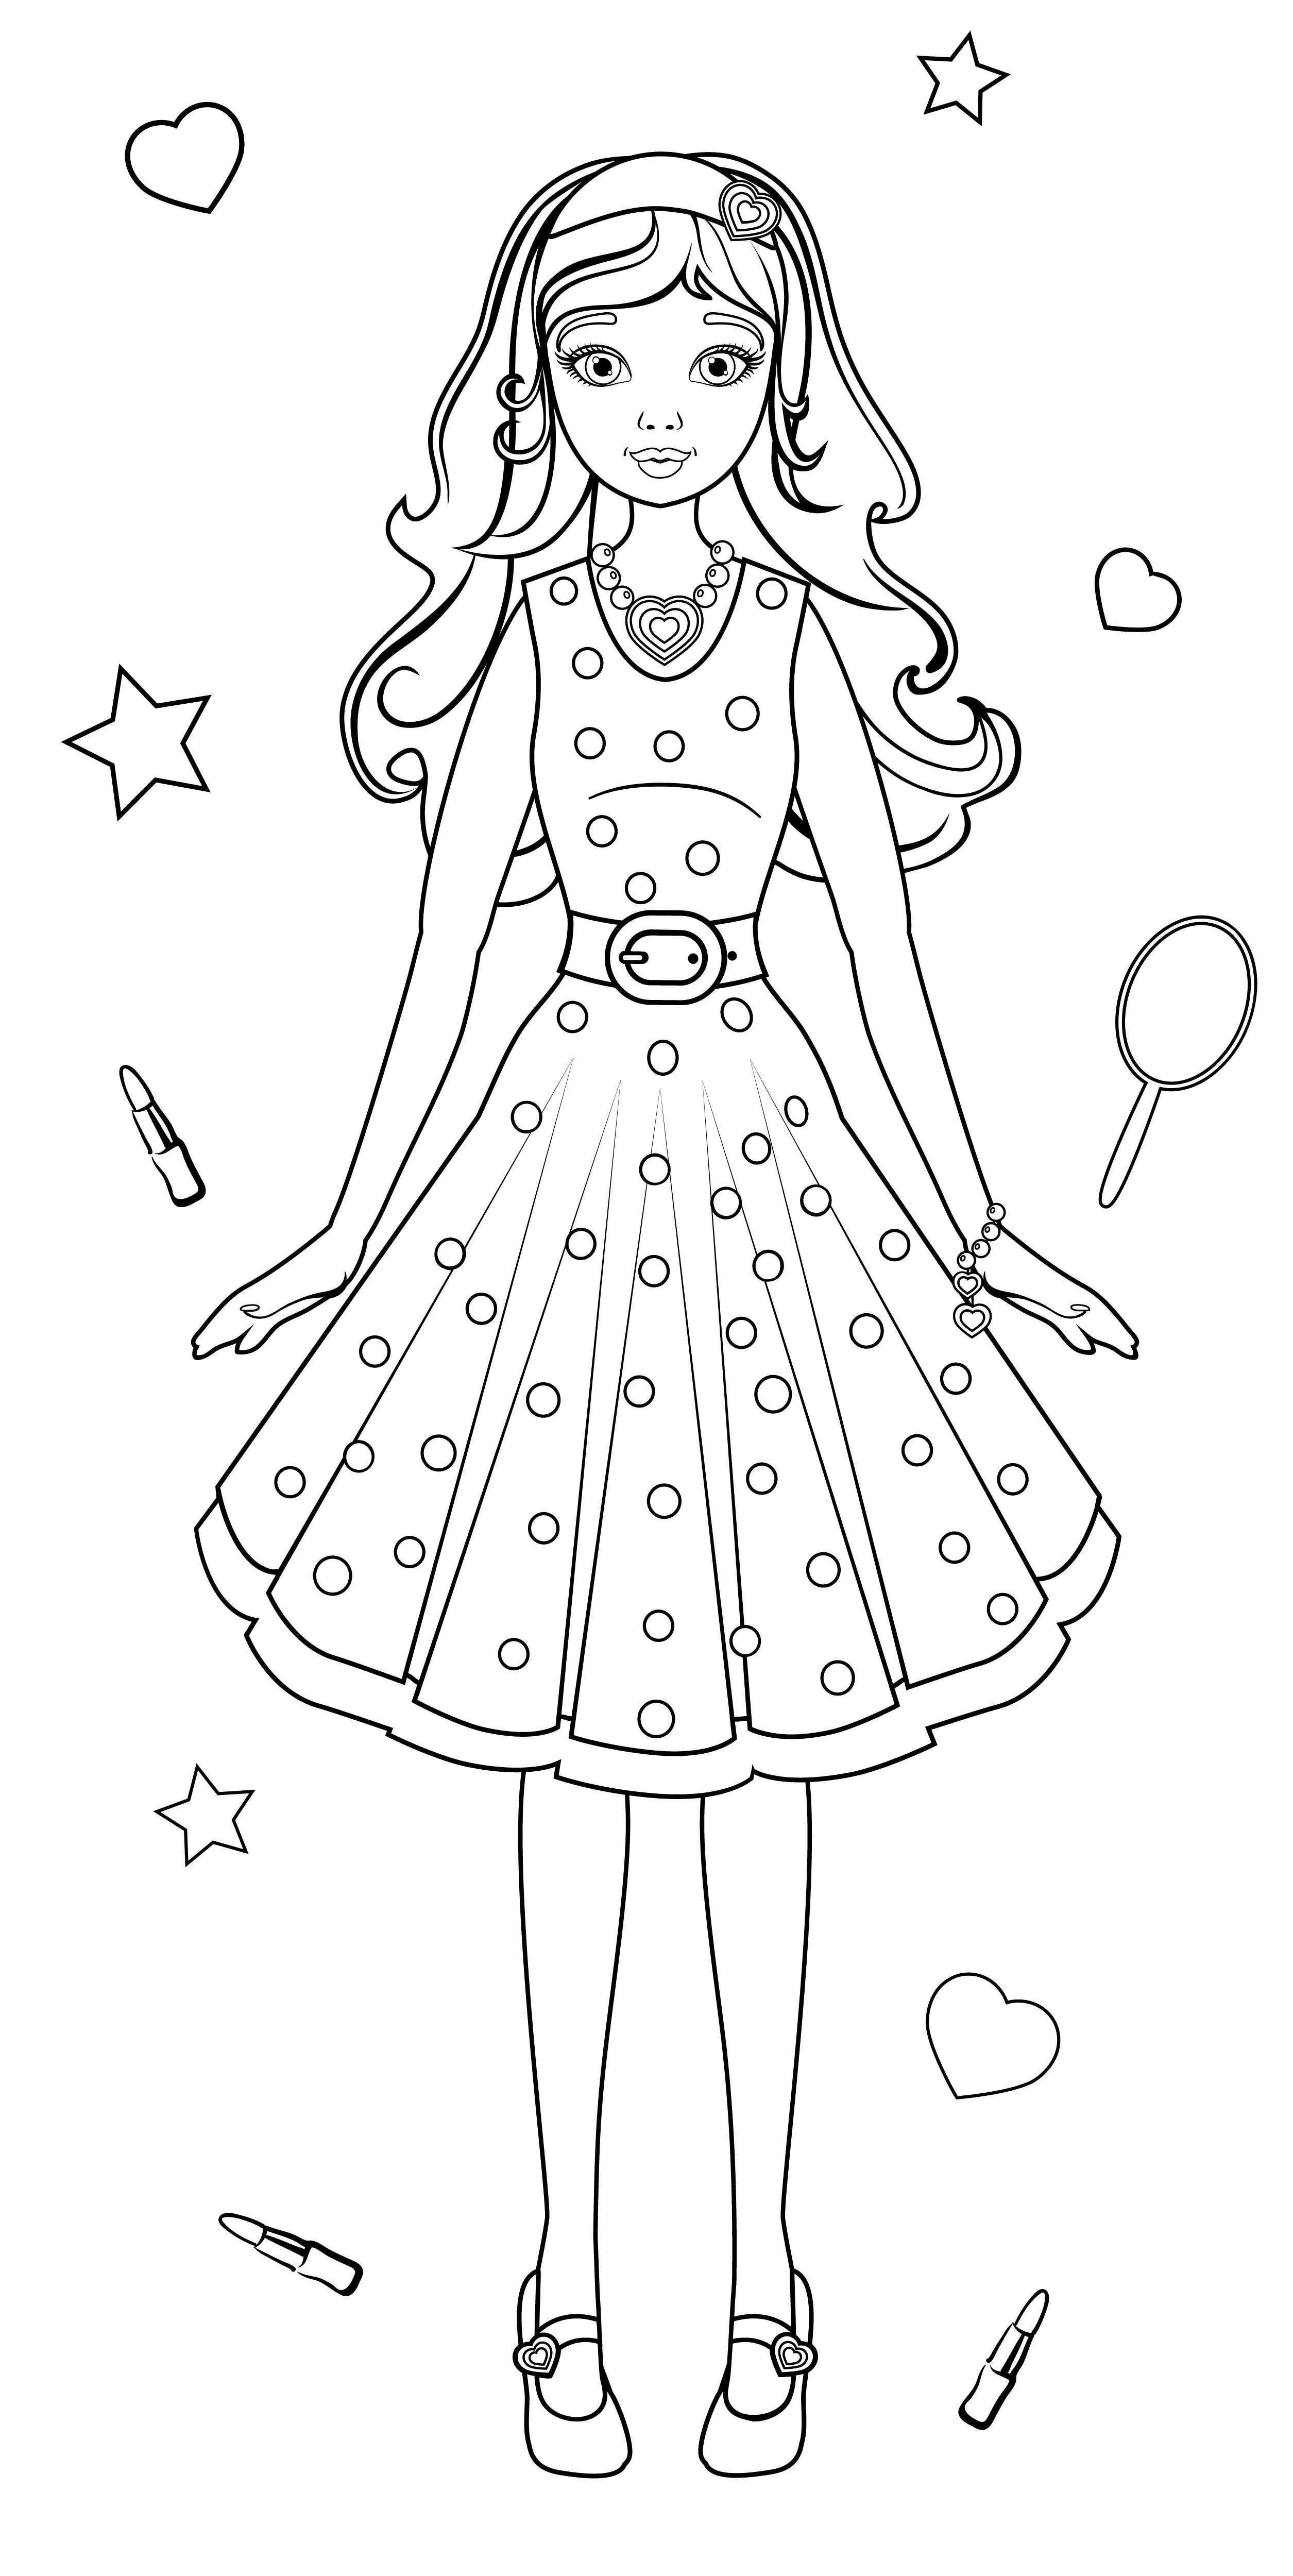 Раскраска очаровательная девушка в платье формата А4 в высоком качестве